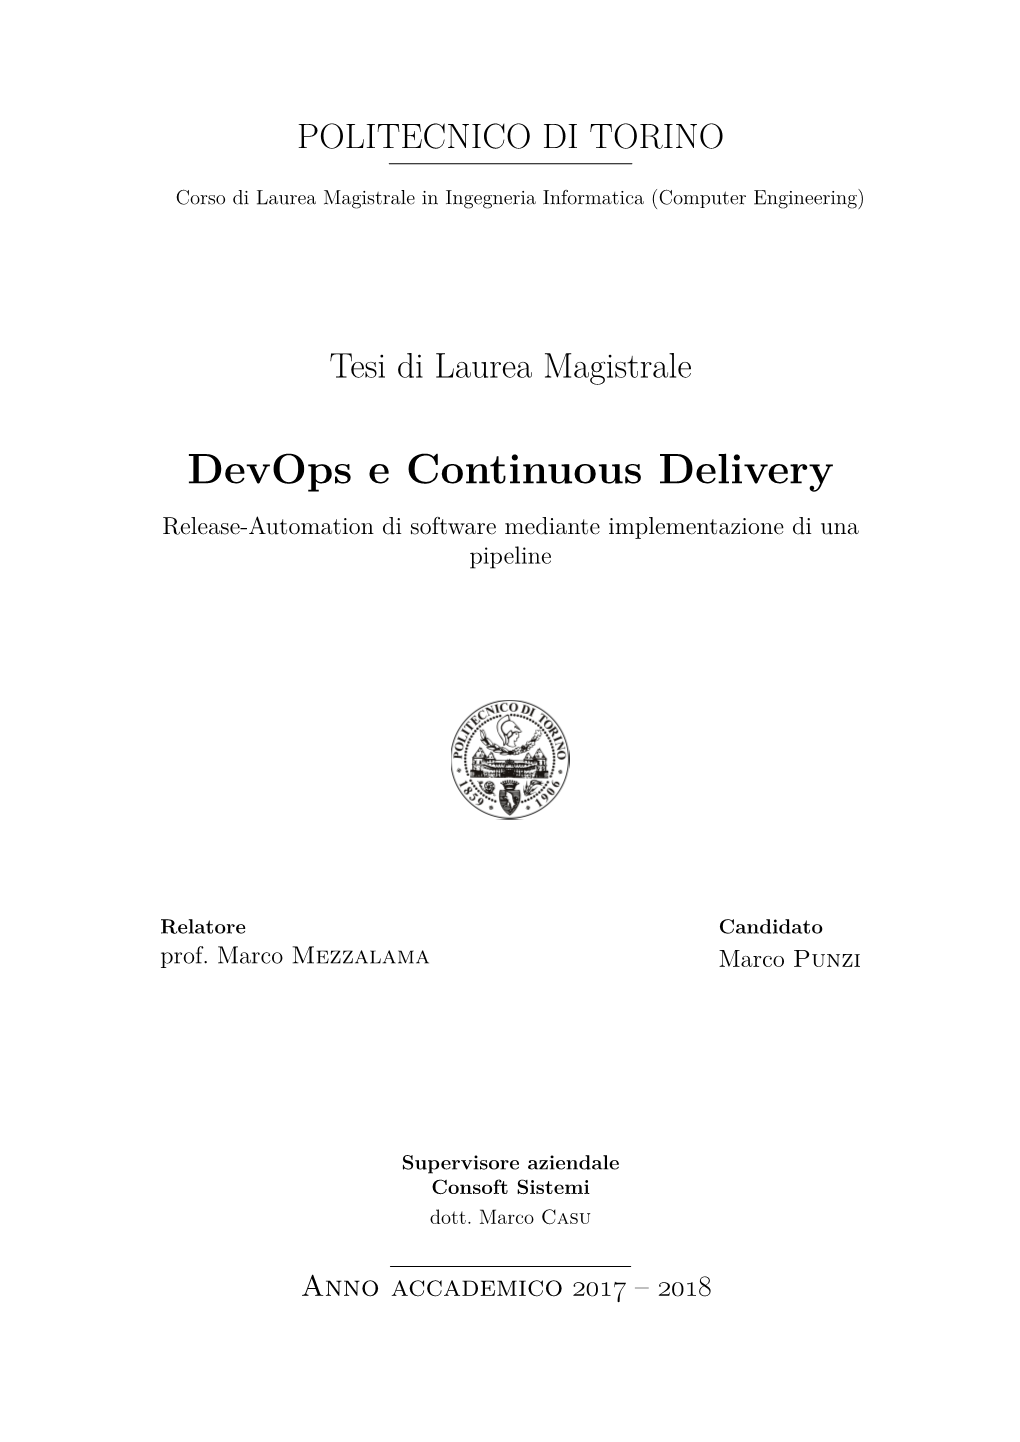 Devops E Continuous Delivery Release-Automation Di Software Mediante Implementazione Di Una Pipeline